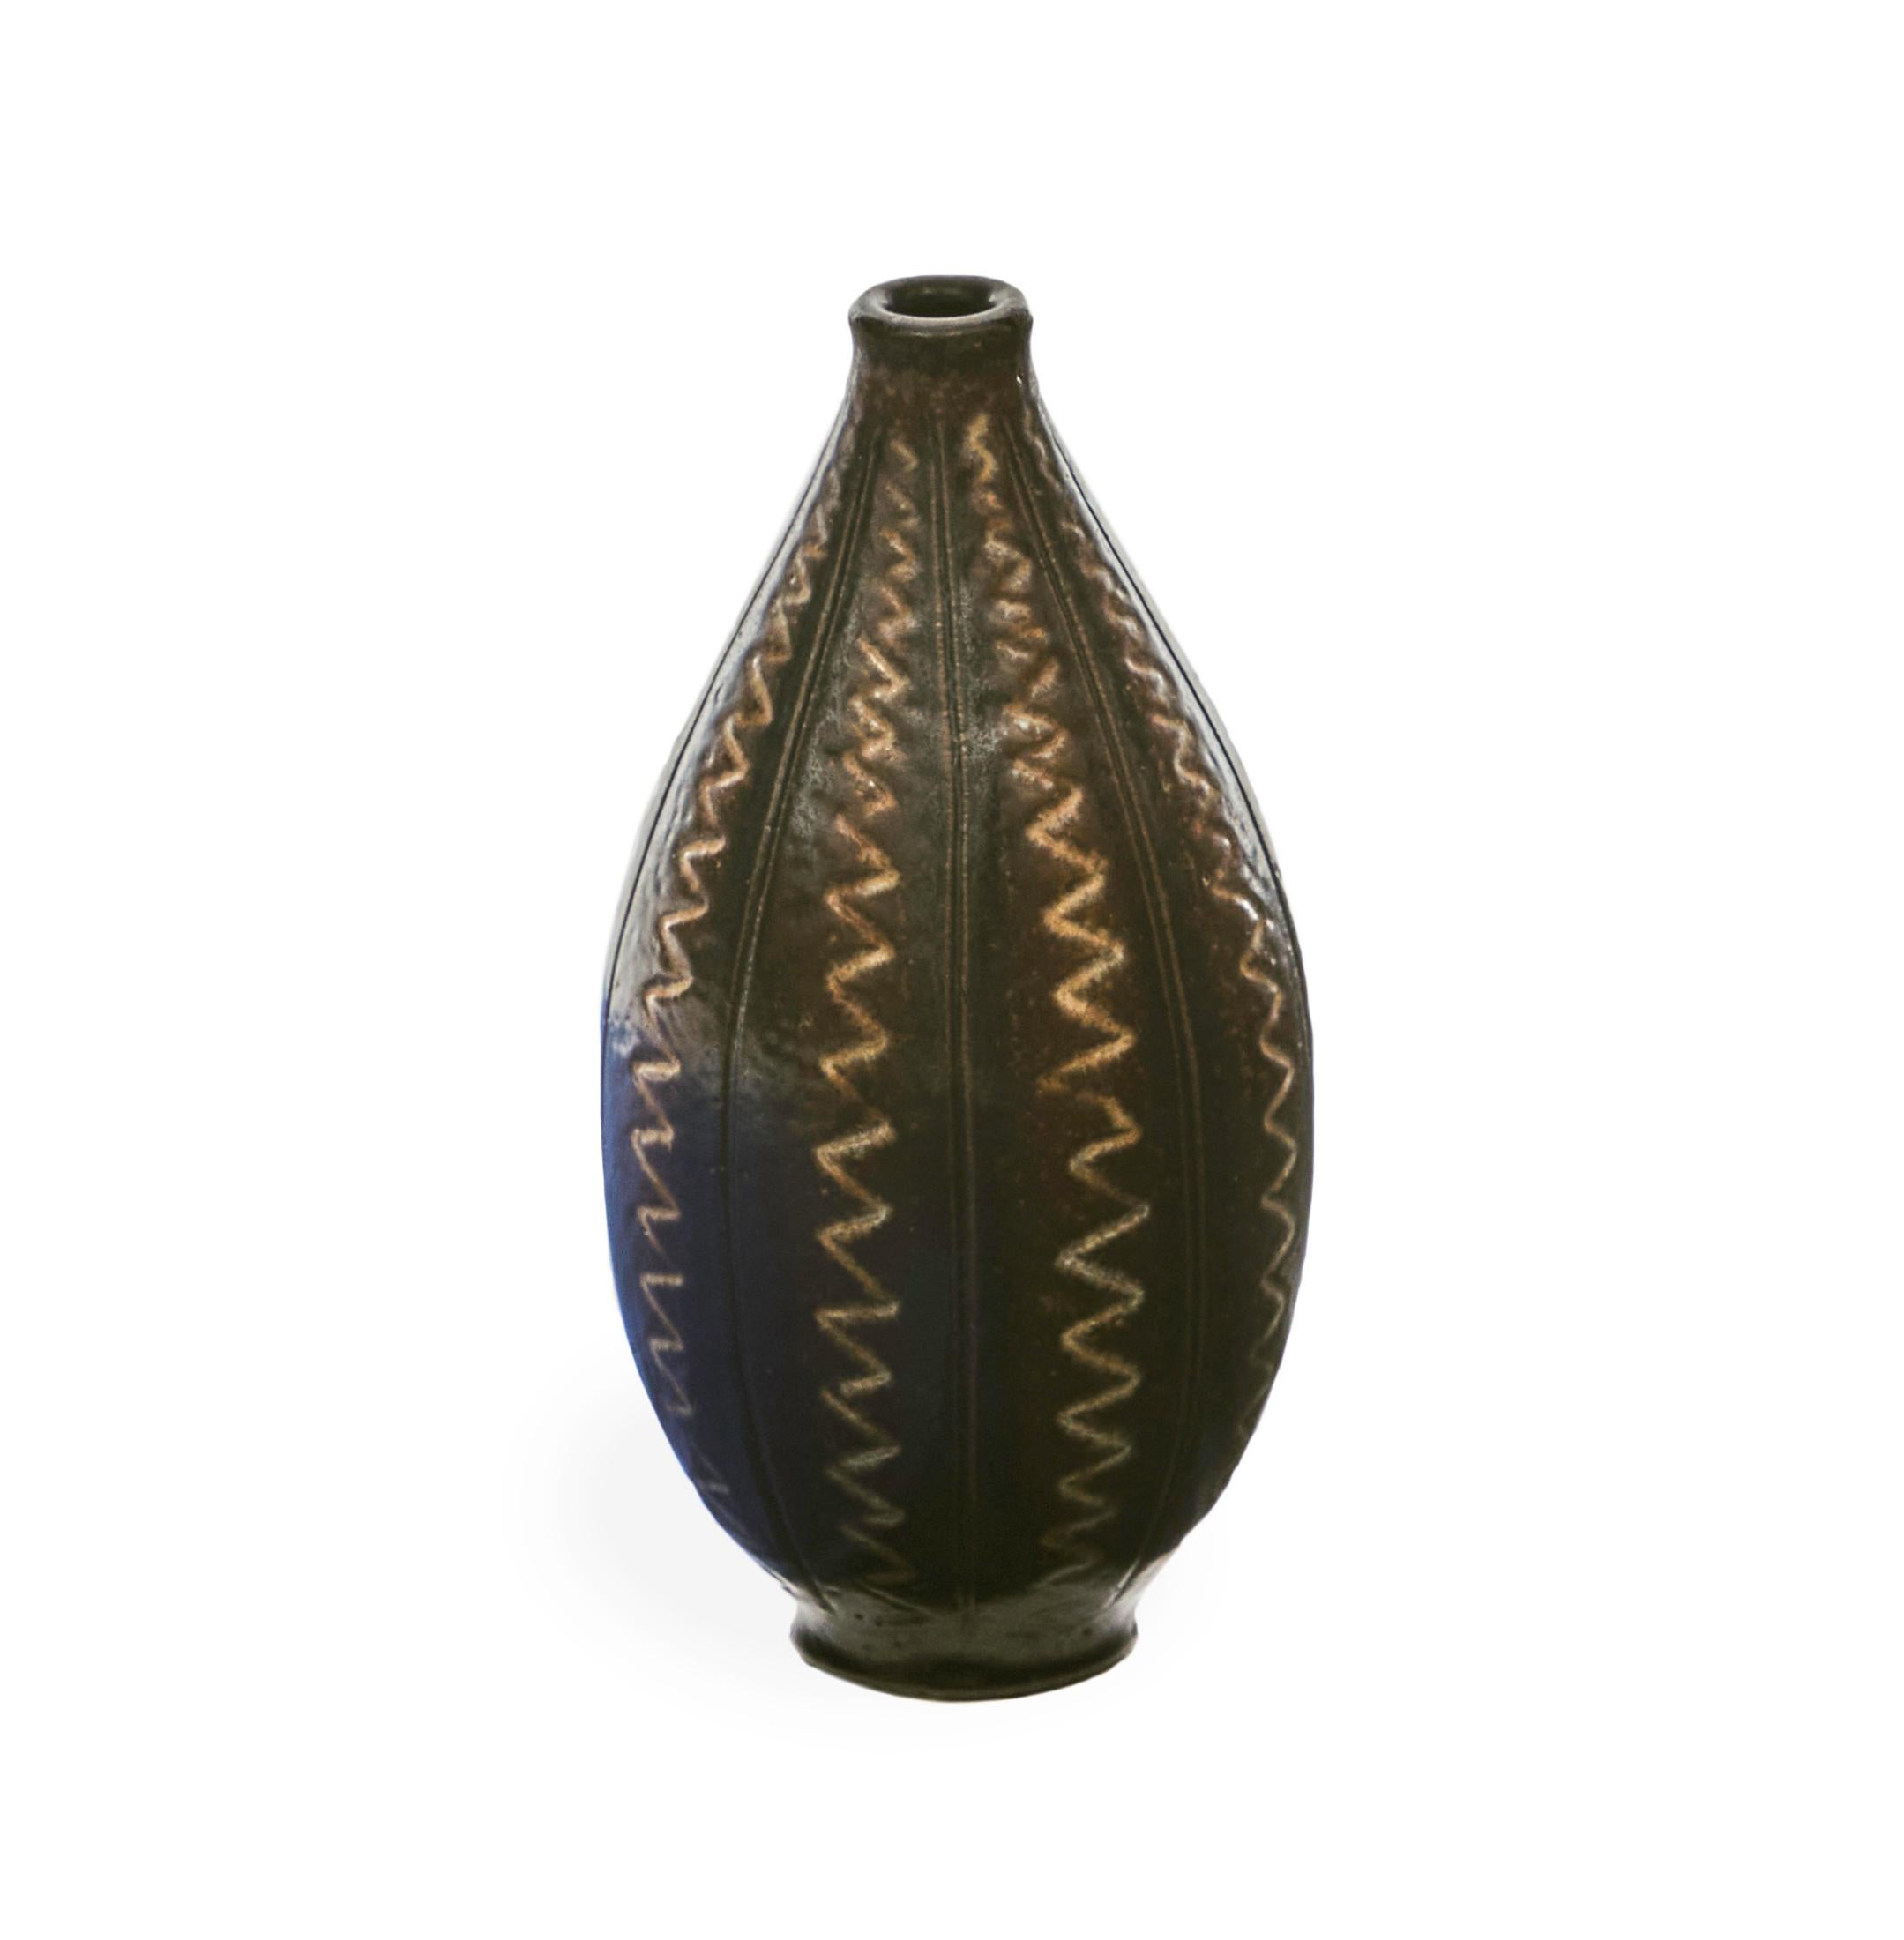 Créés par le céramiste suédois Arthur Andersson au milieu du XXe siècle, ces vases volumineux se distinguent par leur symétrie formelle et leurs motifs en bandes, qui se présentent souvent sous la forme de zigzags, de stries ou de vagues